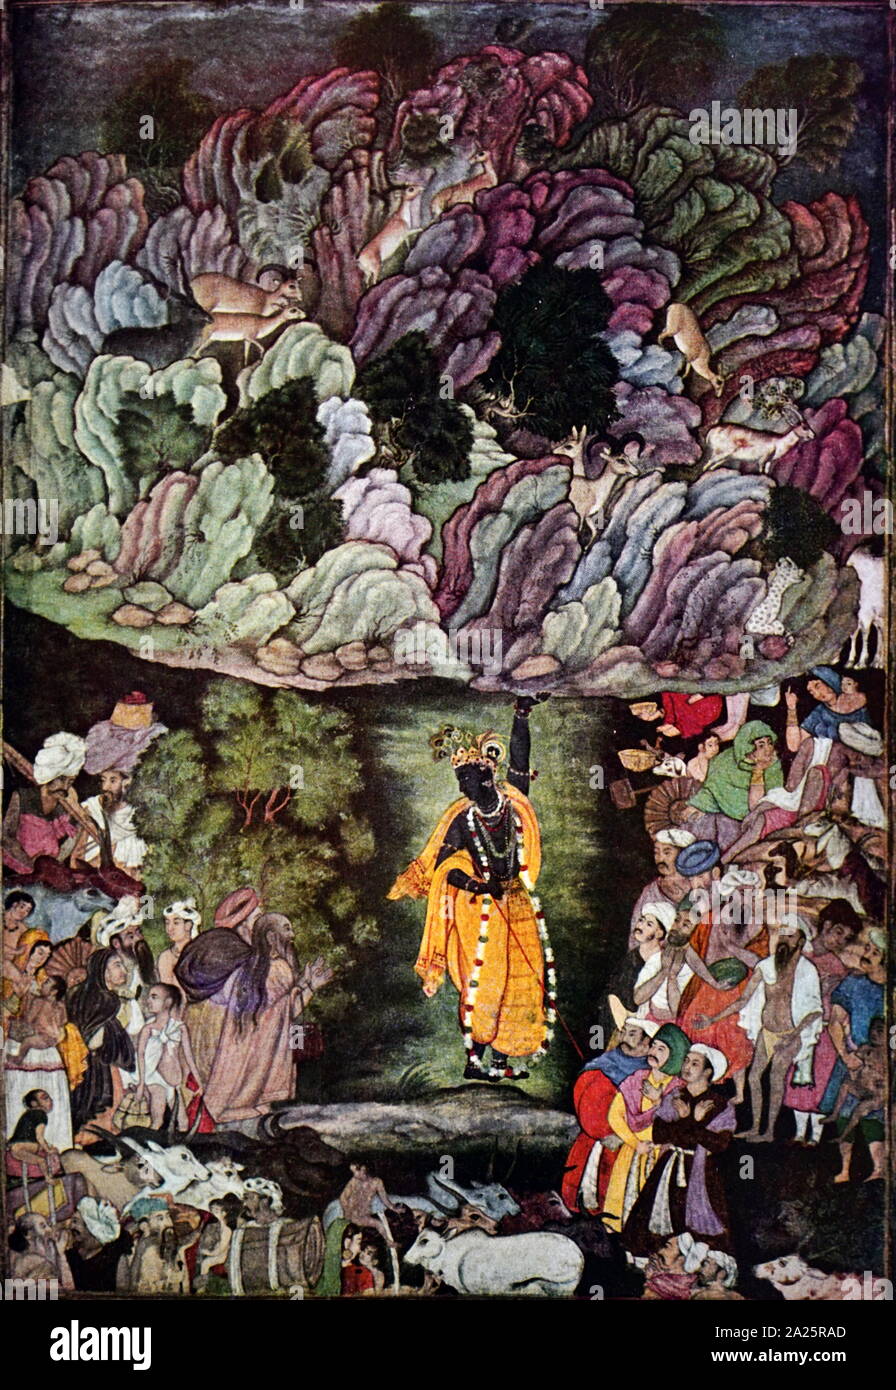 Indische zeigt den Gott Krishna, Holding mount Govardhan. Indische, Mughal 1556-1605. Tempera auf Papier Stockfoto